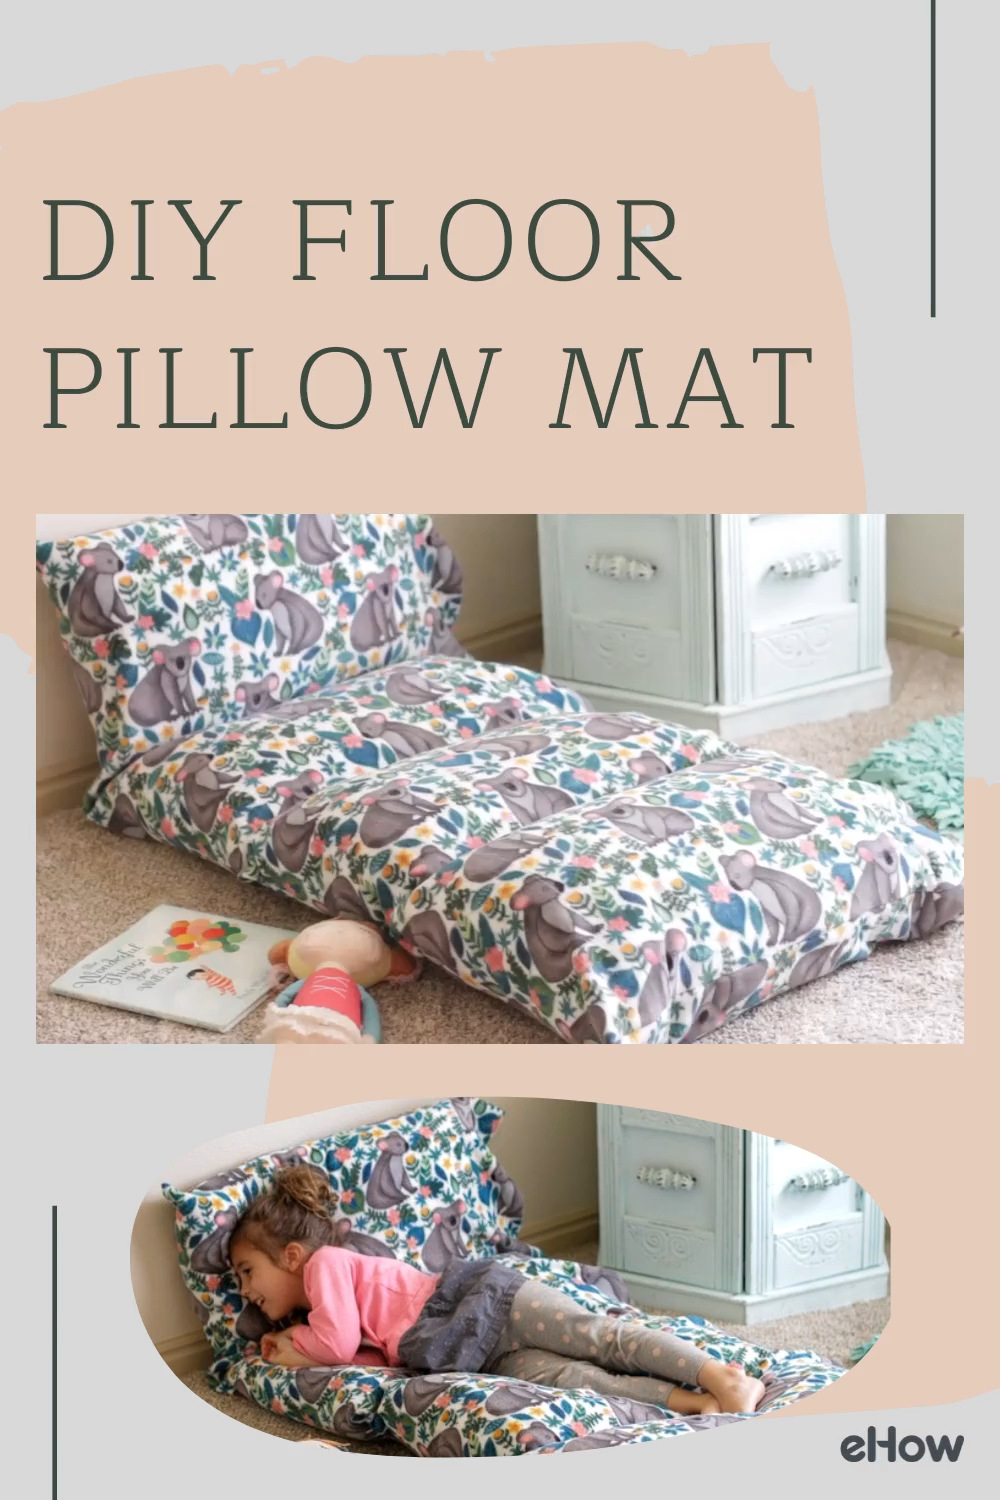 DIY Floor Pillow Mat - DIY Floor Pillow Mat -   19 diy Pillows floor ideas